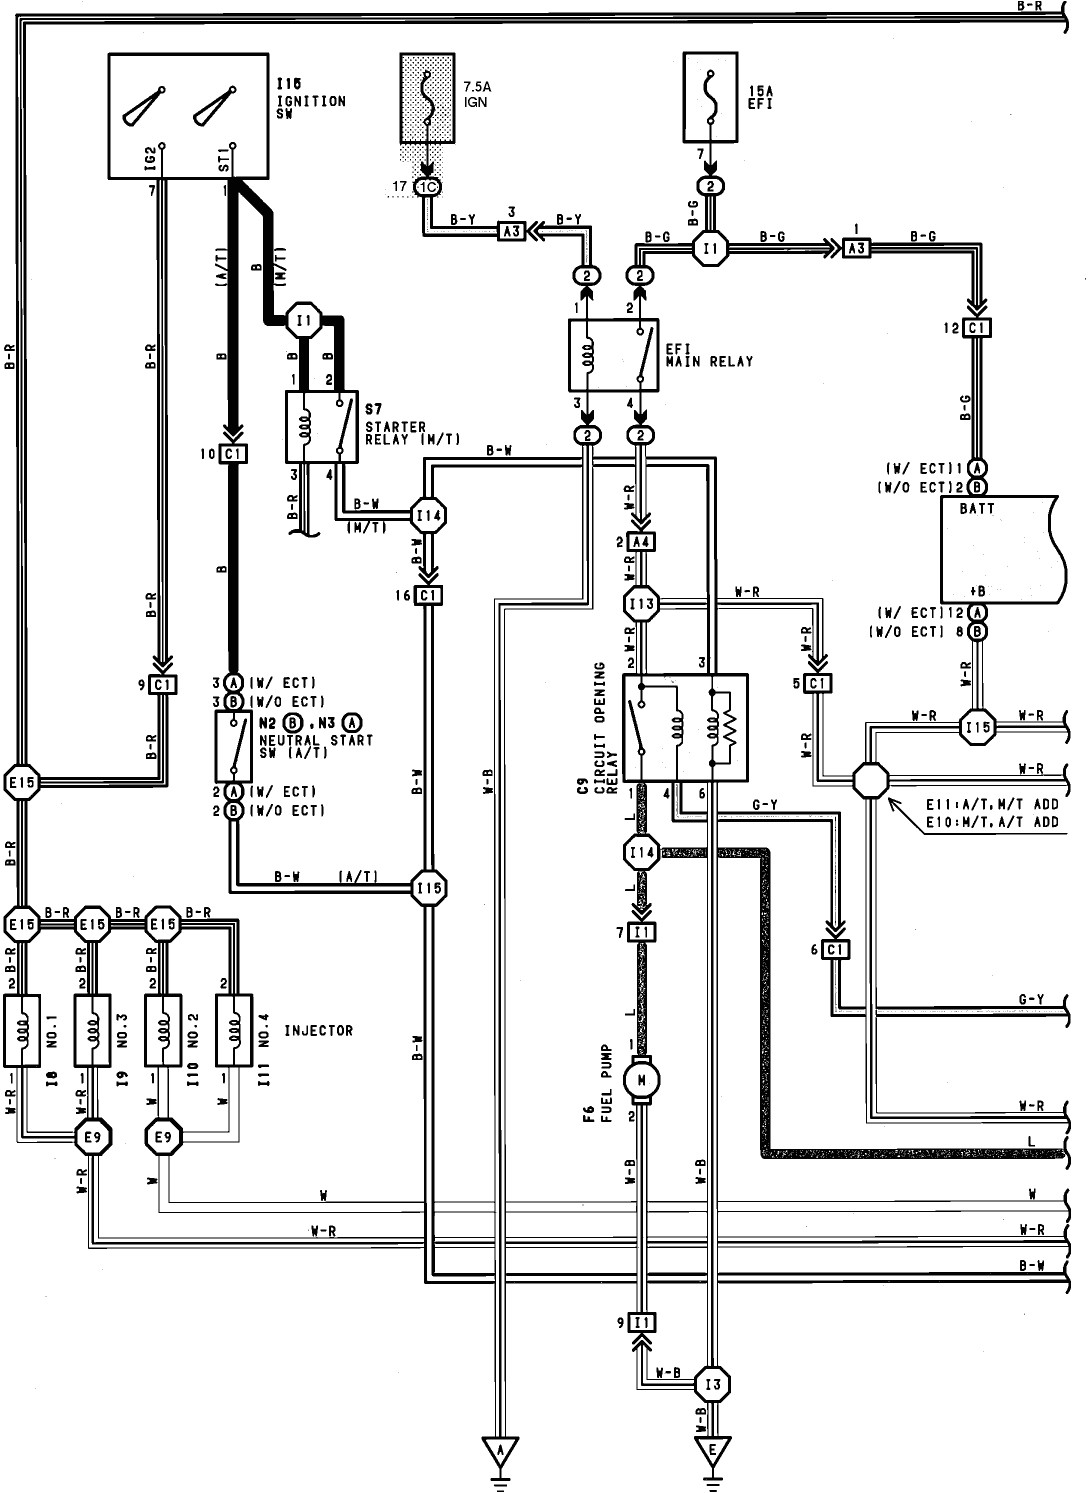 1990 toyota wiring diagram wiring diagram database radio wiring diagram toyota corolla 1990 wiring diagram toyota 1990